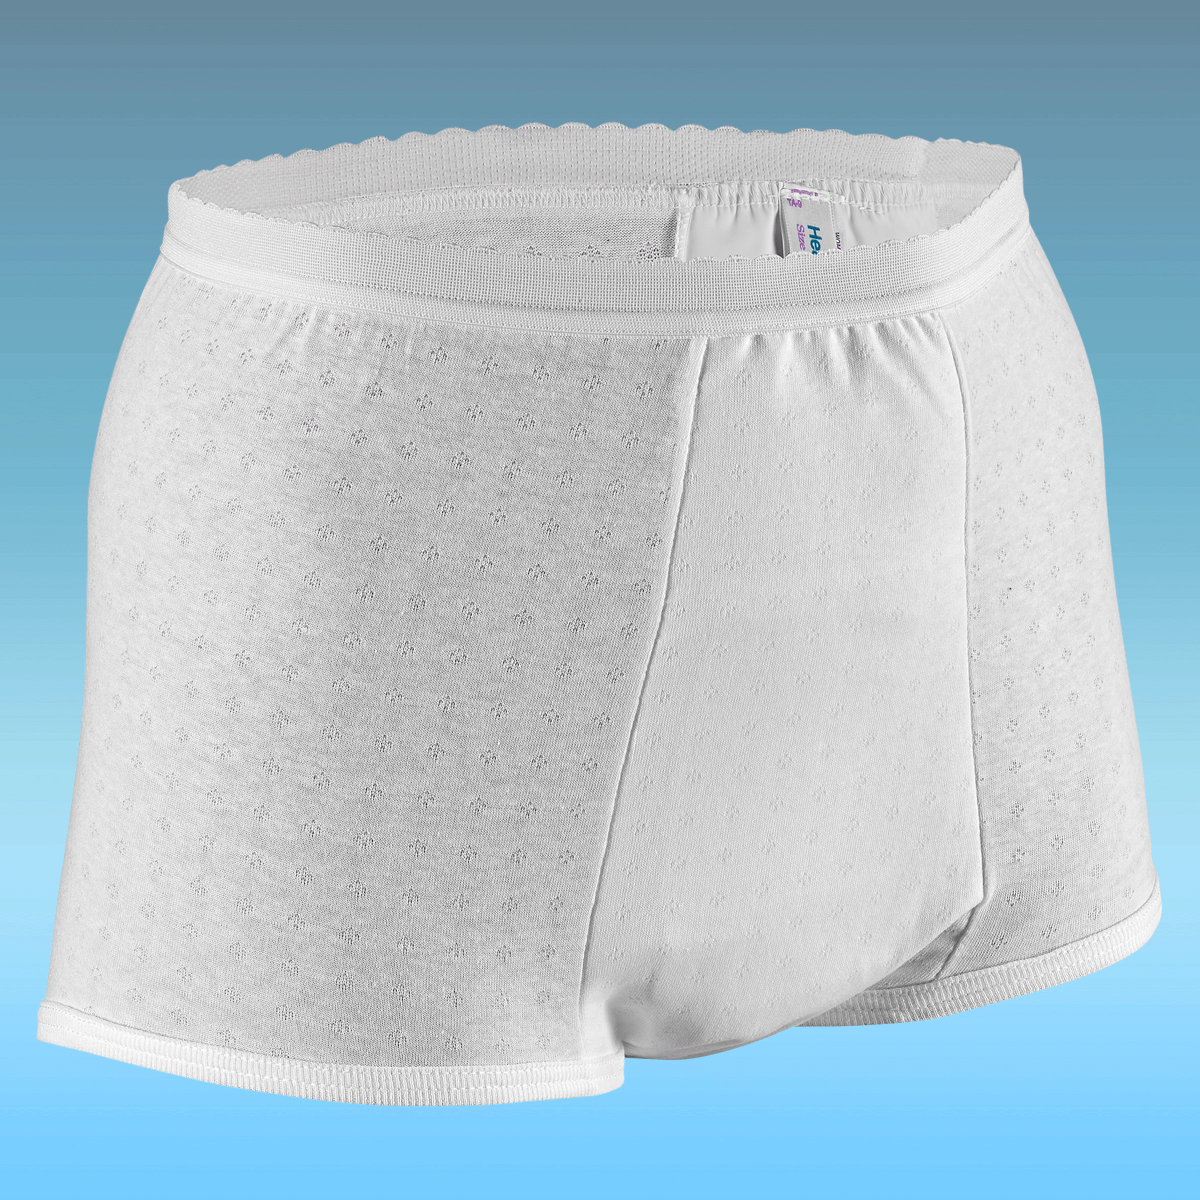 DR BEI Lady Underwear Breathable Soft Fabric Women Underwear